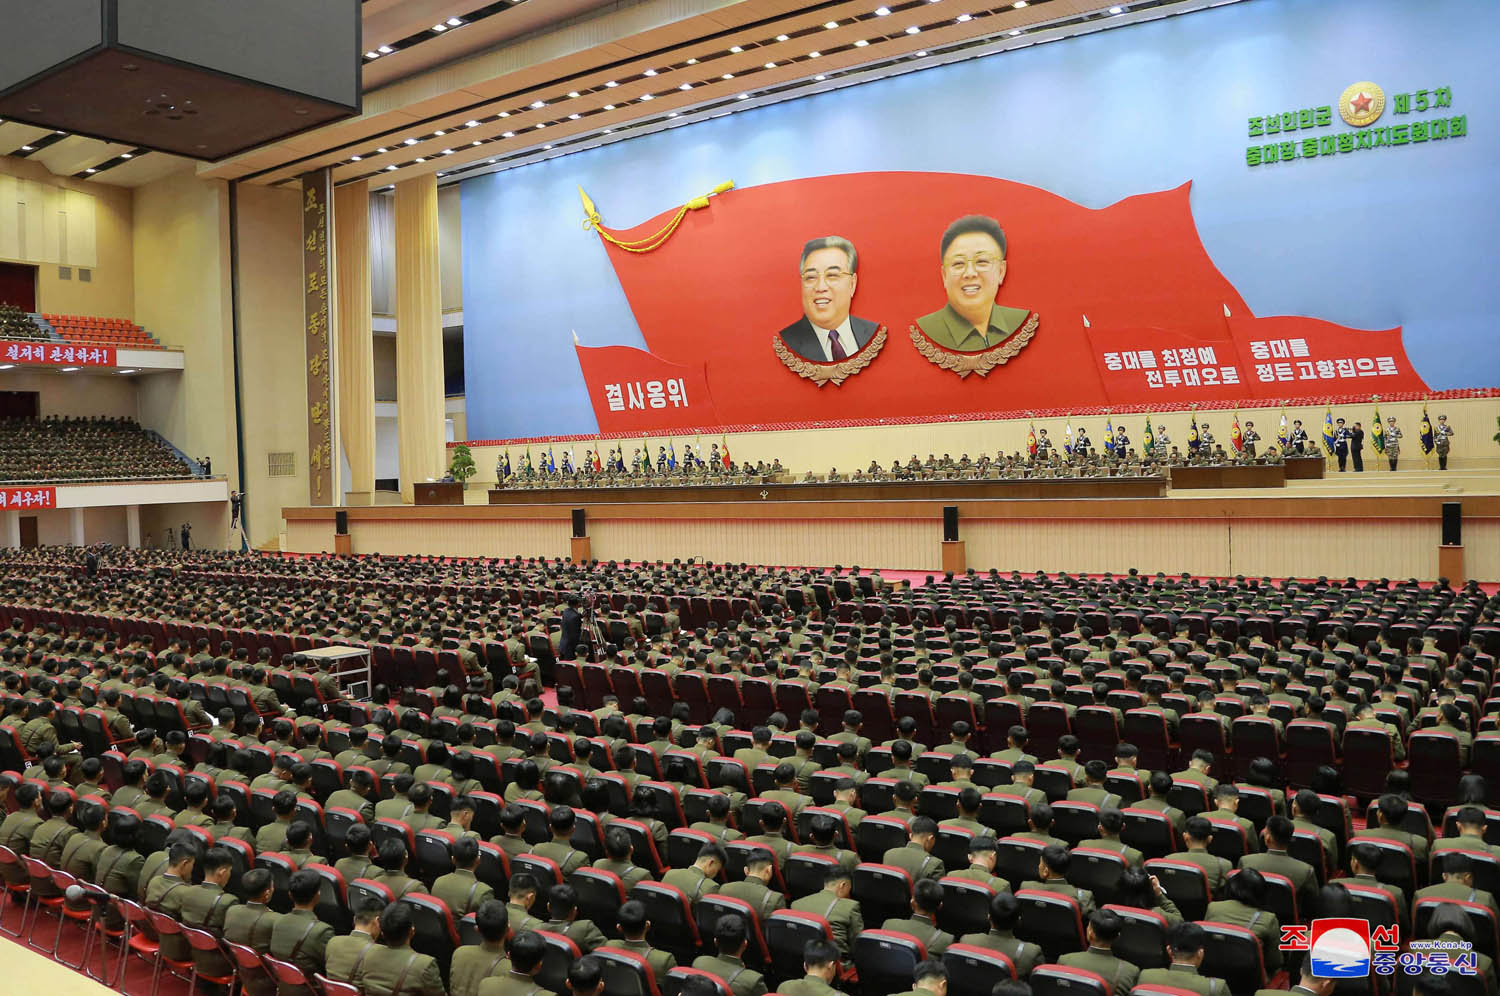 اجتماع للحزب الشيوعي الكوري